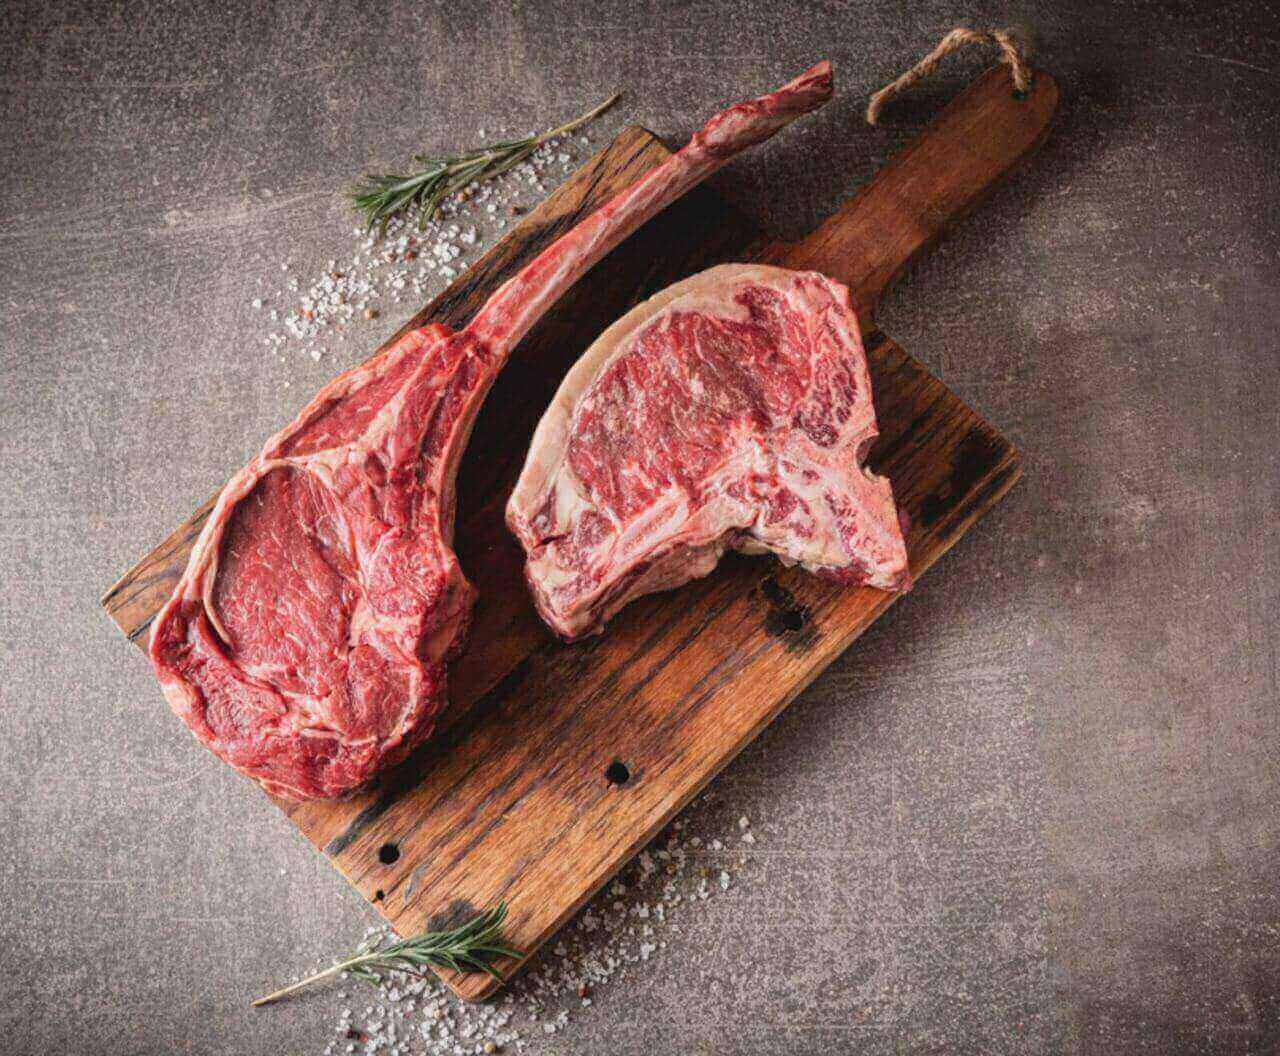 Leckere Steaks am Knochen auf einem Brettchen